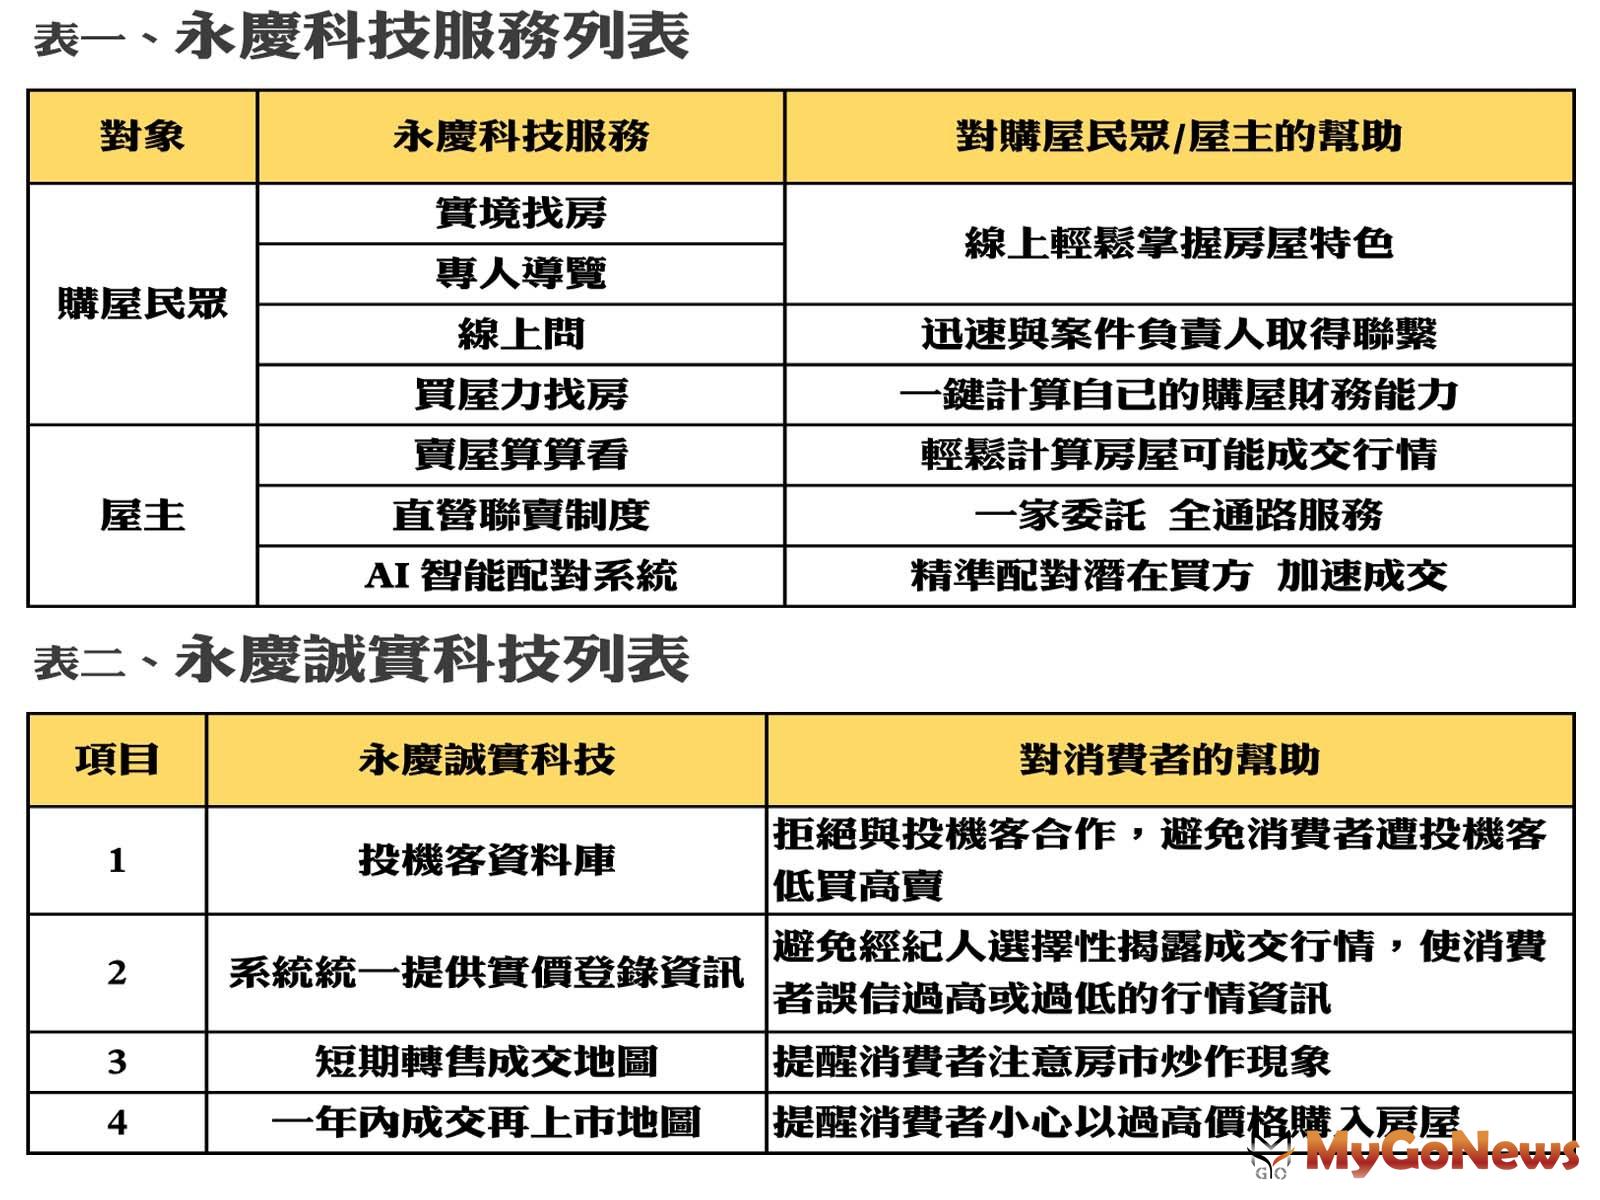 永慶科技服務列表 MyGoNews房地產新聞 市場快訊